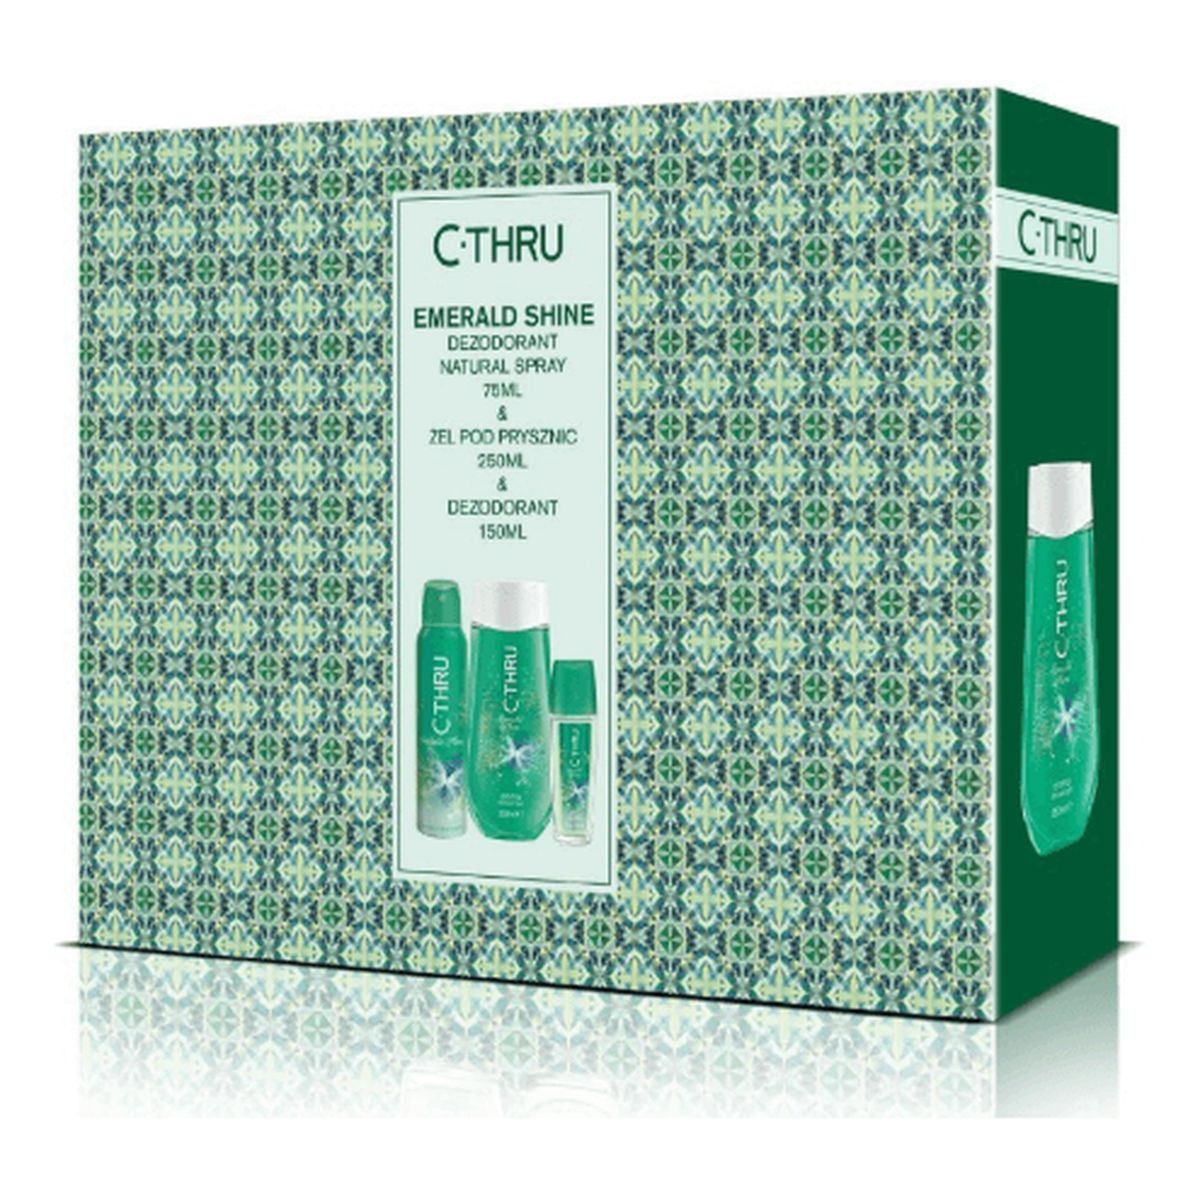 C-Thru Zestaw prezentowy Emerald Shine (Deo spray 150 ml + Dezodorant 75ml+Żel pod prysznic 250ml)